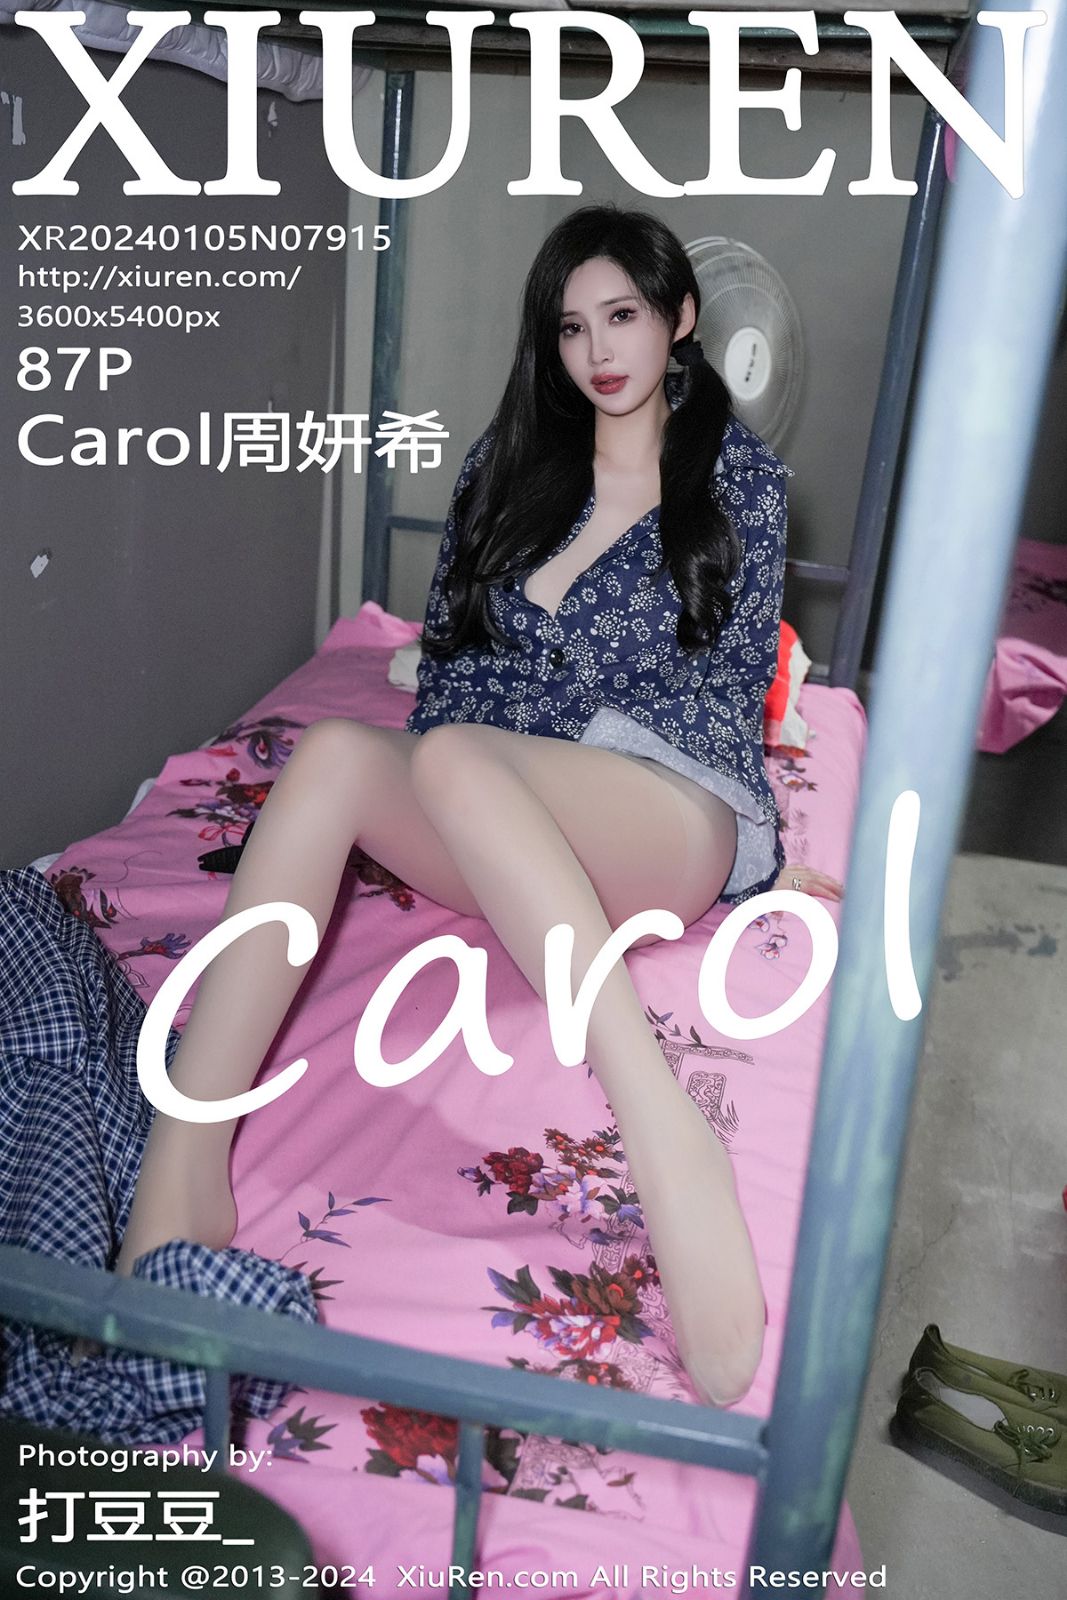 秀人网-第7915期-模特Carol周妍希 性感写真 86张